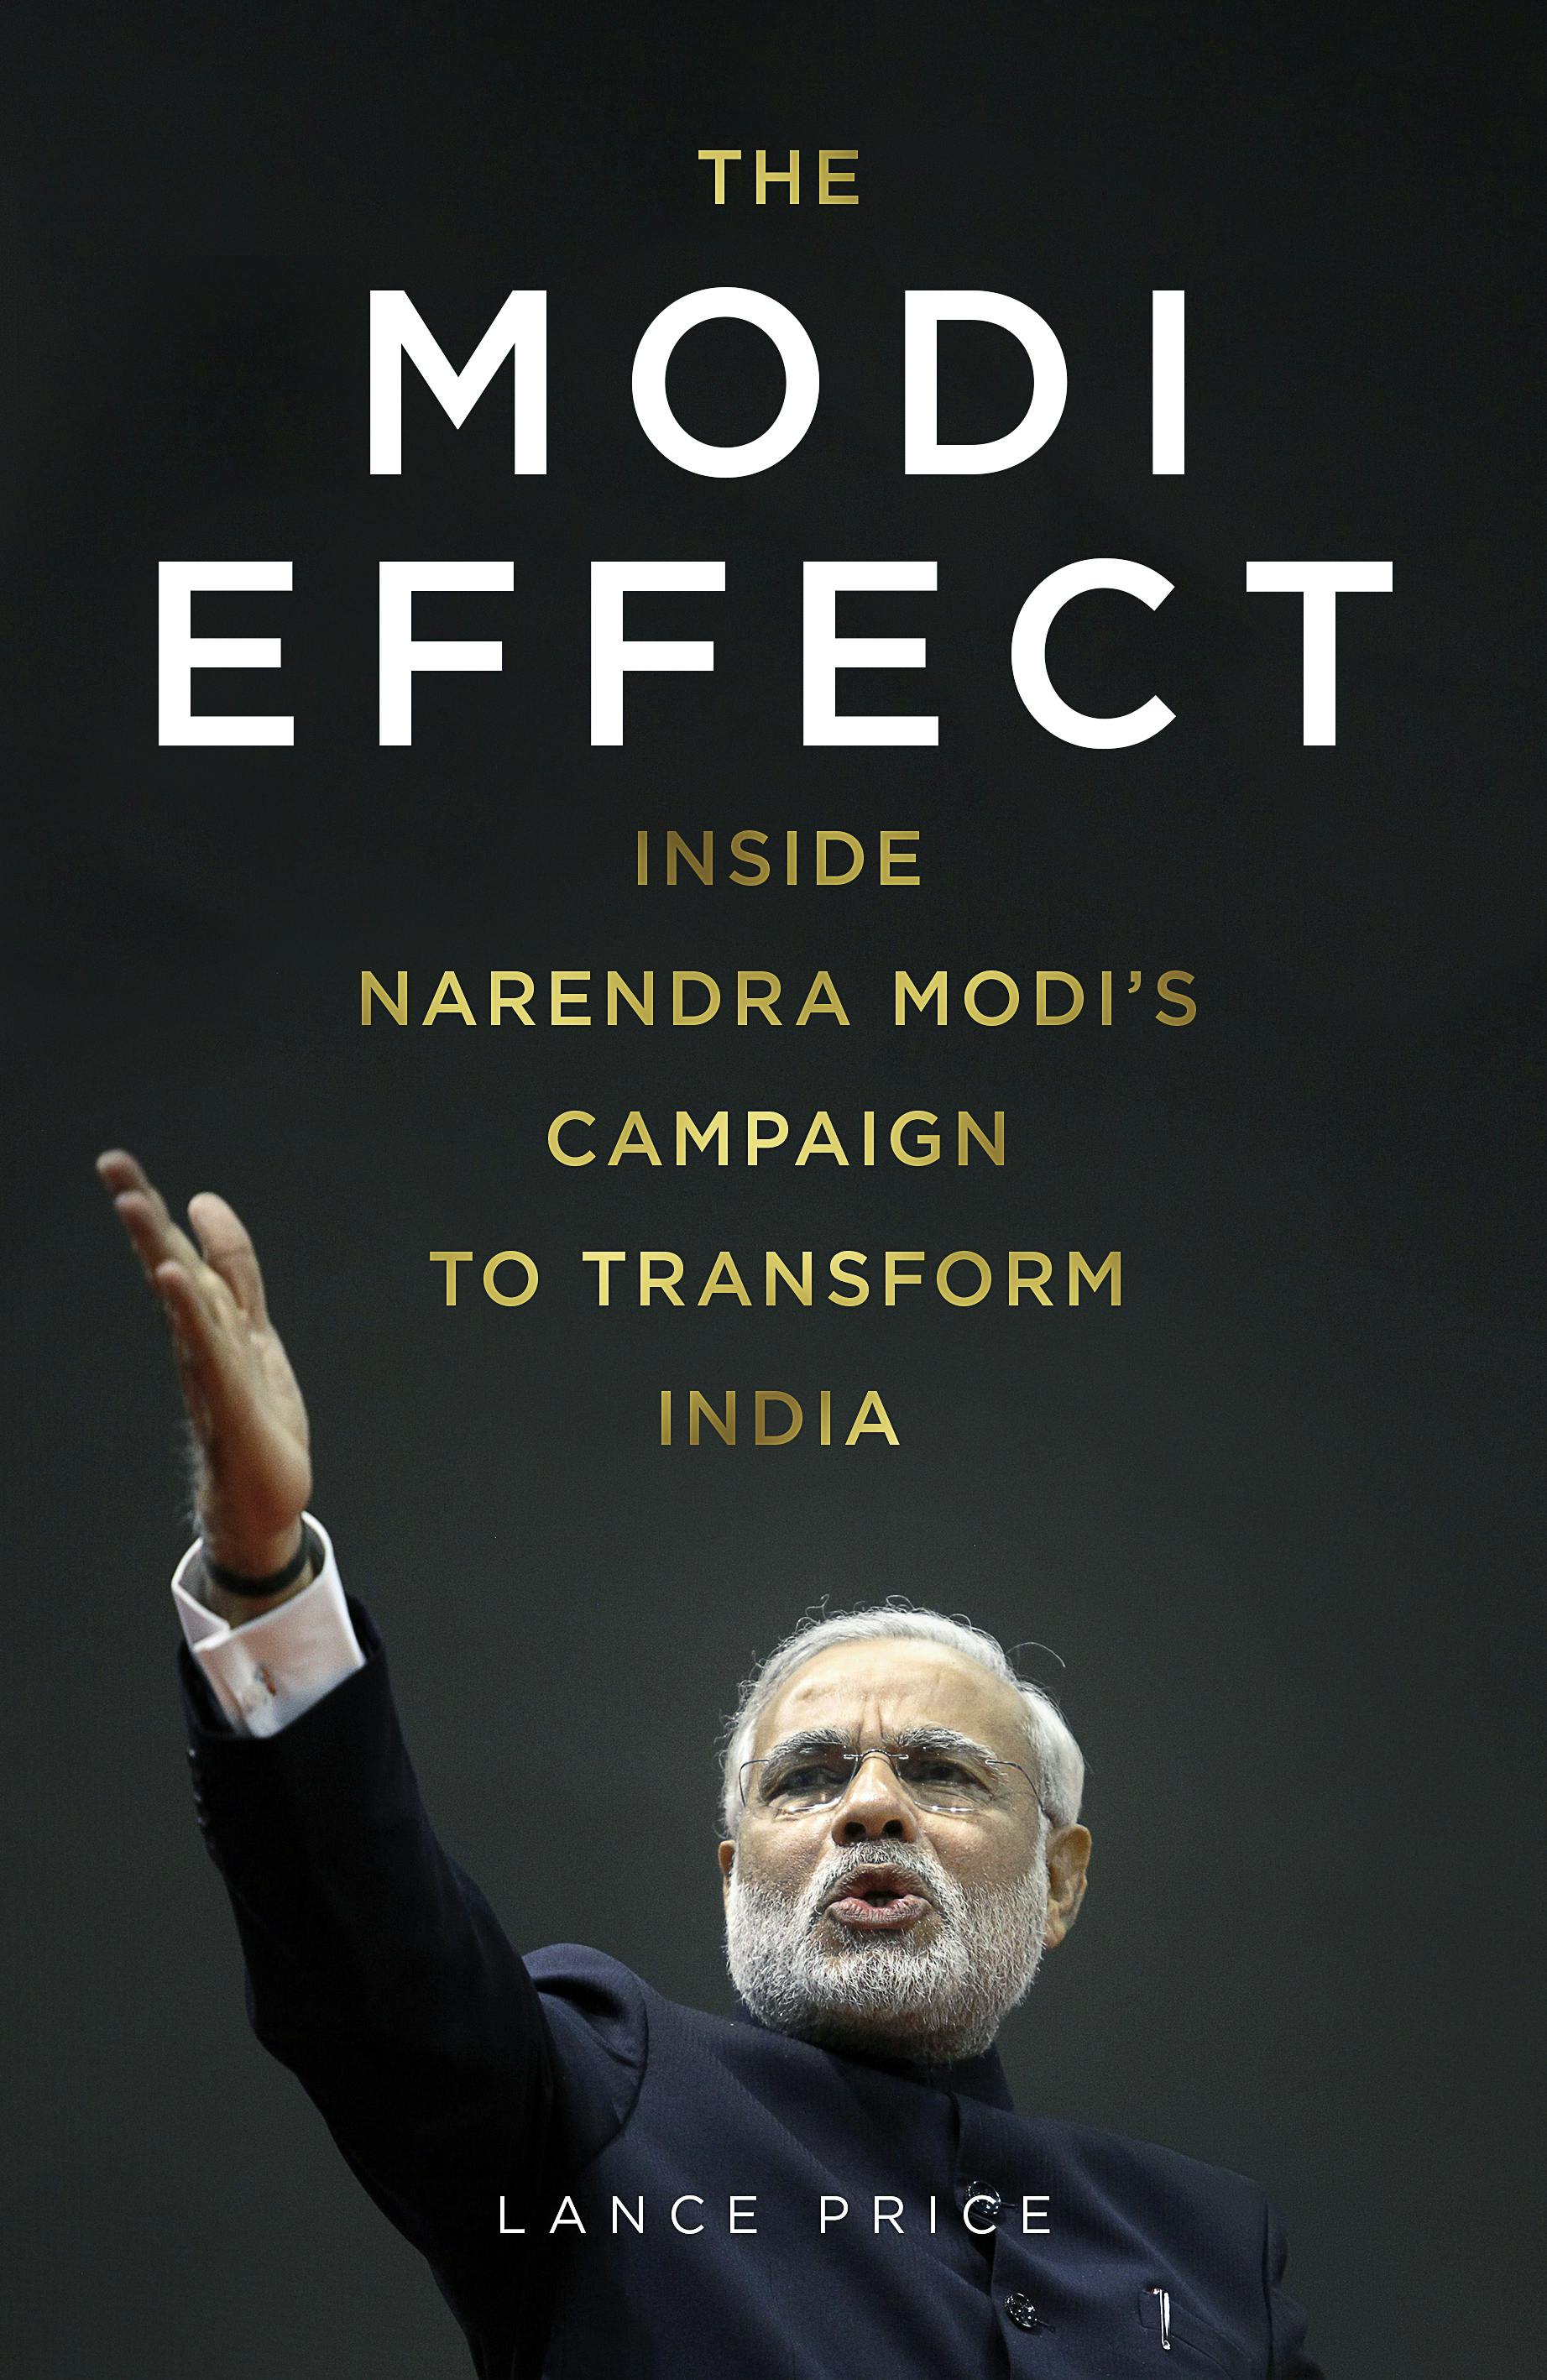 The Modi Effect Inside Narendra Modi's campaign to transform India by